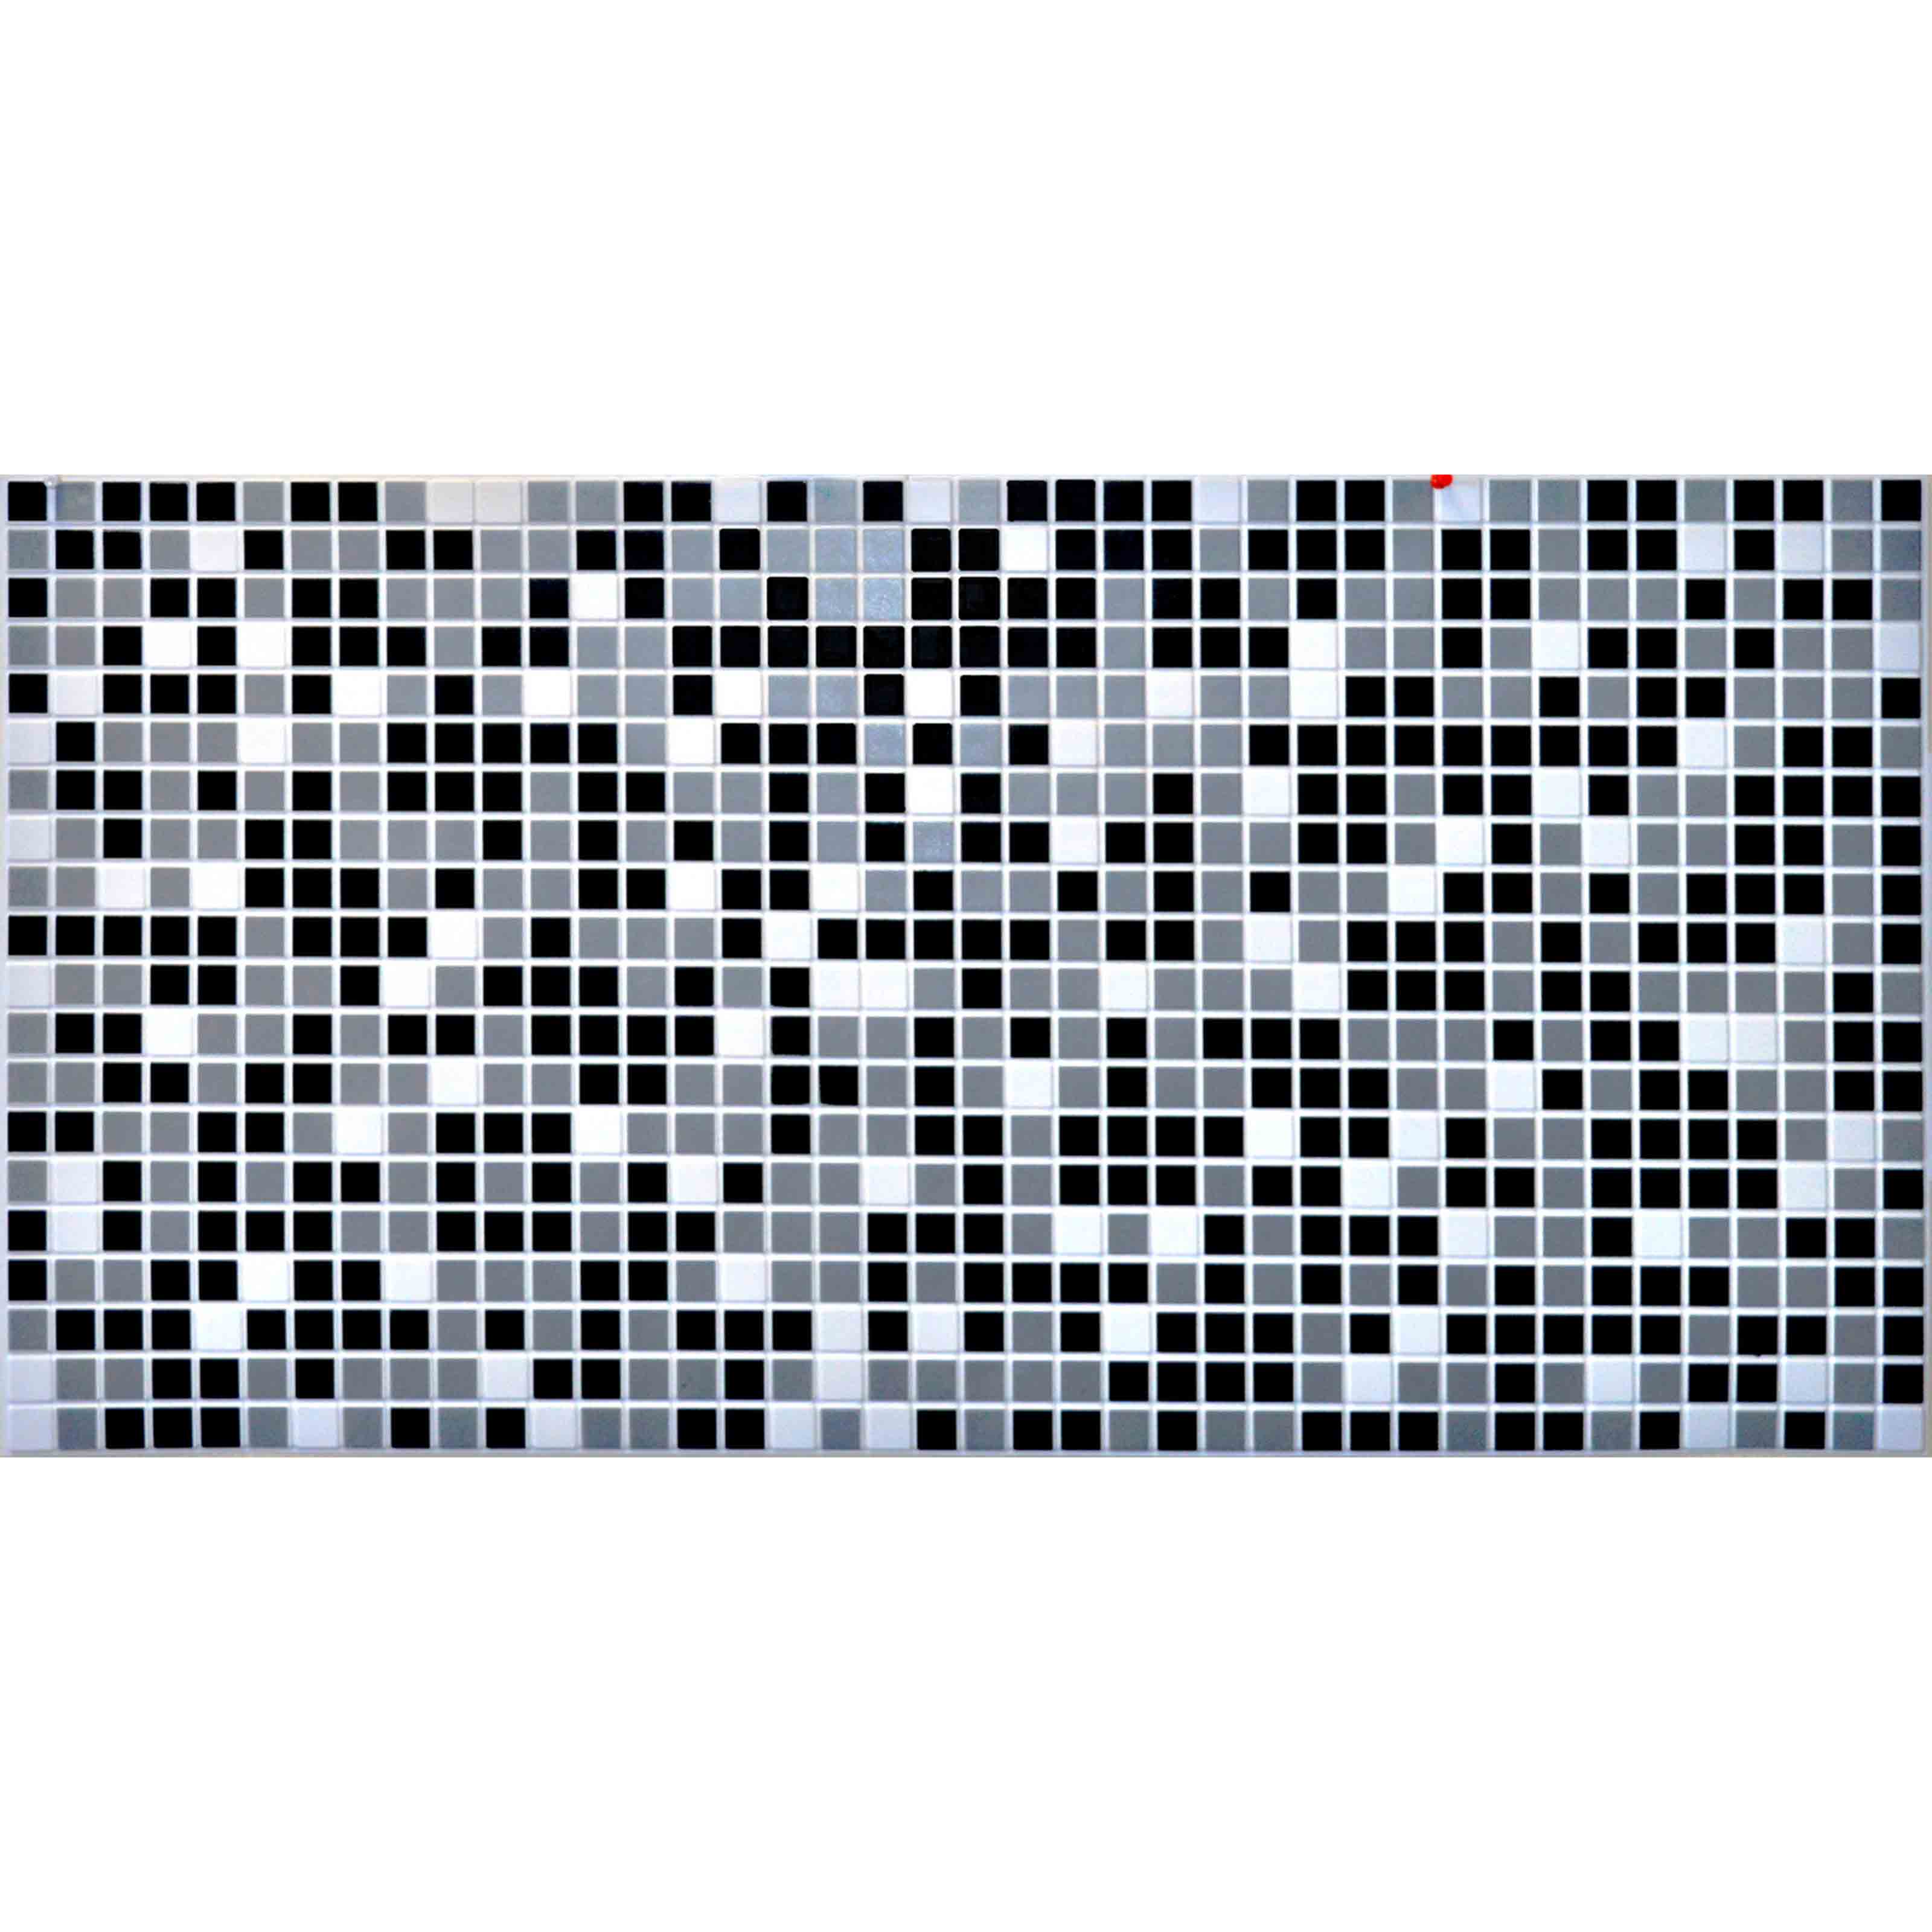 Pannelli 3D Rivestimento a parete in PVC effetto MOSAICO GRIGIO NERO  Realistici e isolanti. - Eternal Parquet